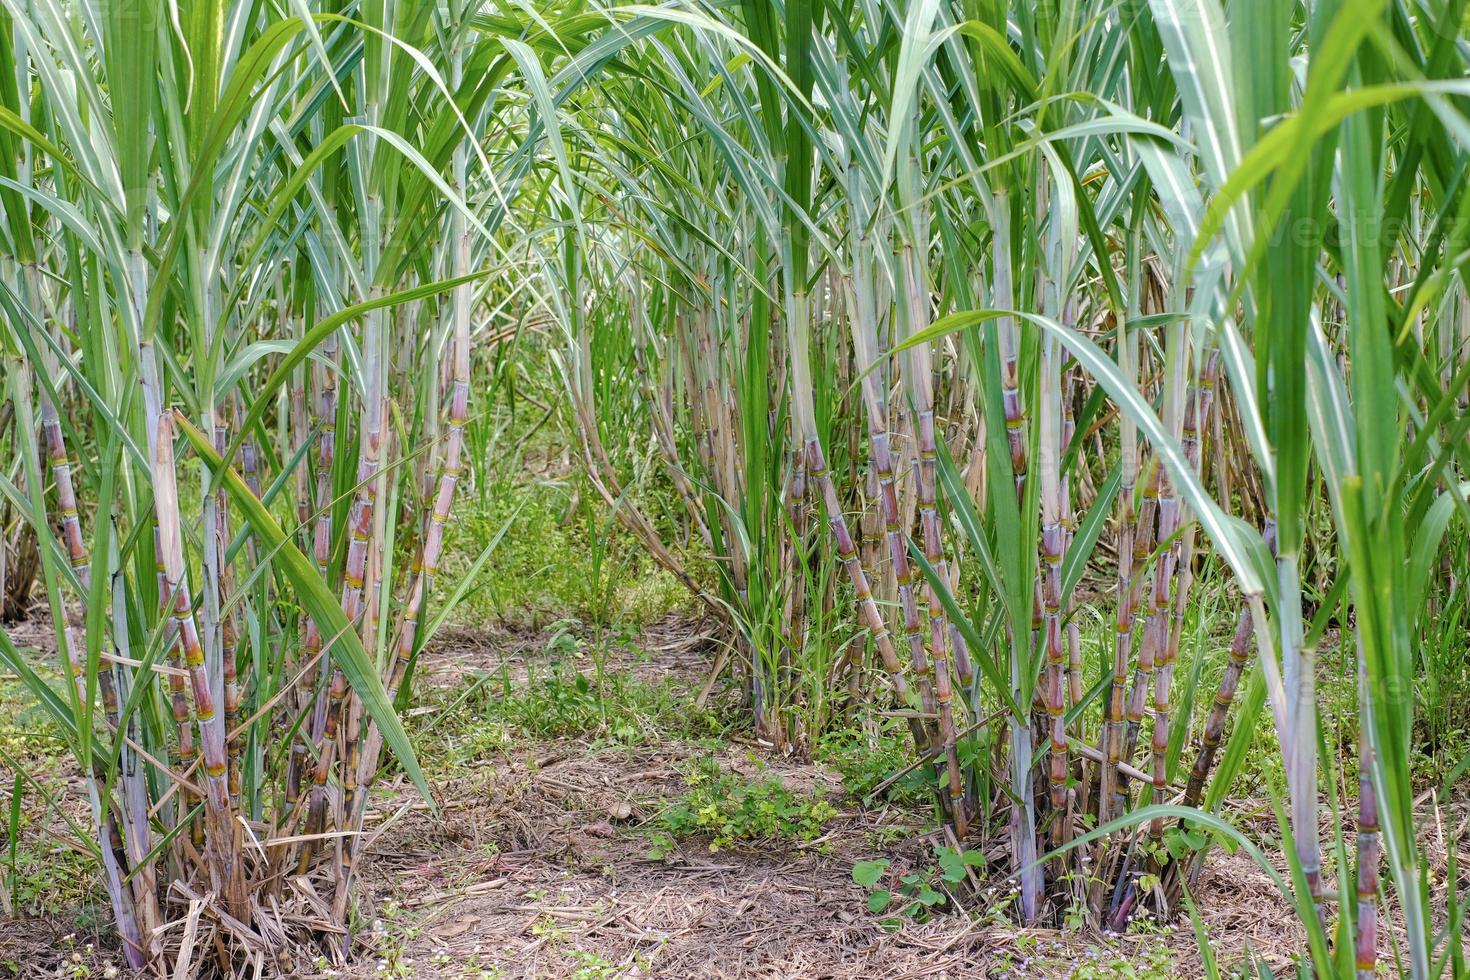 la canne à sucre, dans les champs de canne à sucre à la saison des pluies, a de la verdure et de la fraîcheur. montre la fertilité du sol photo